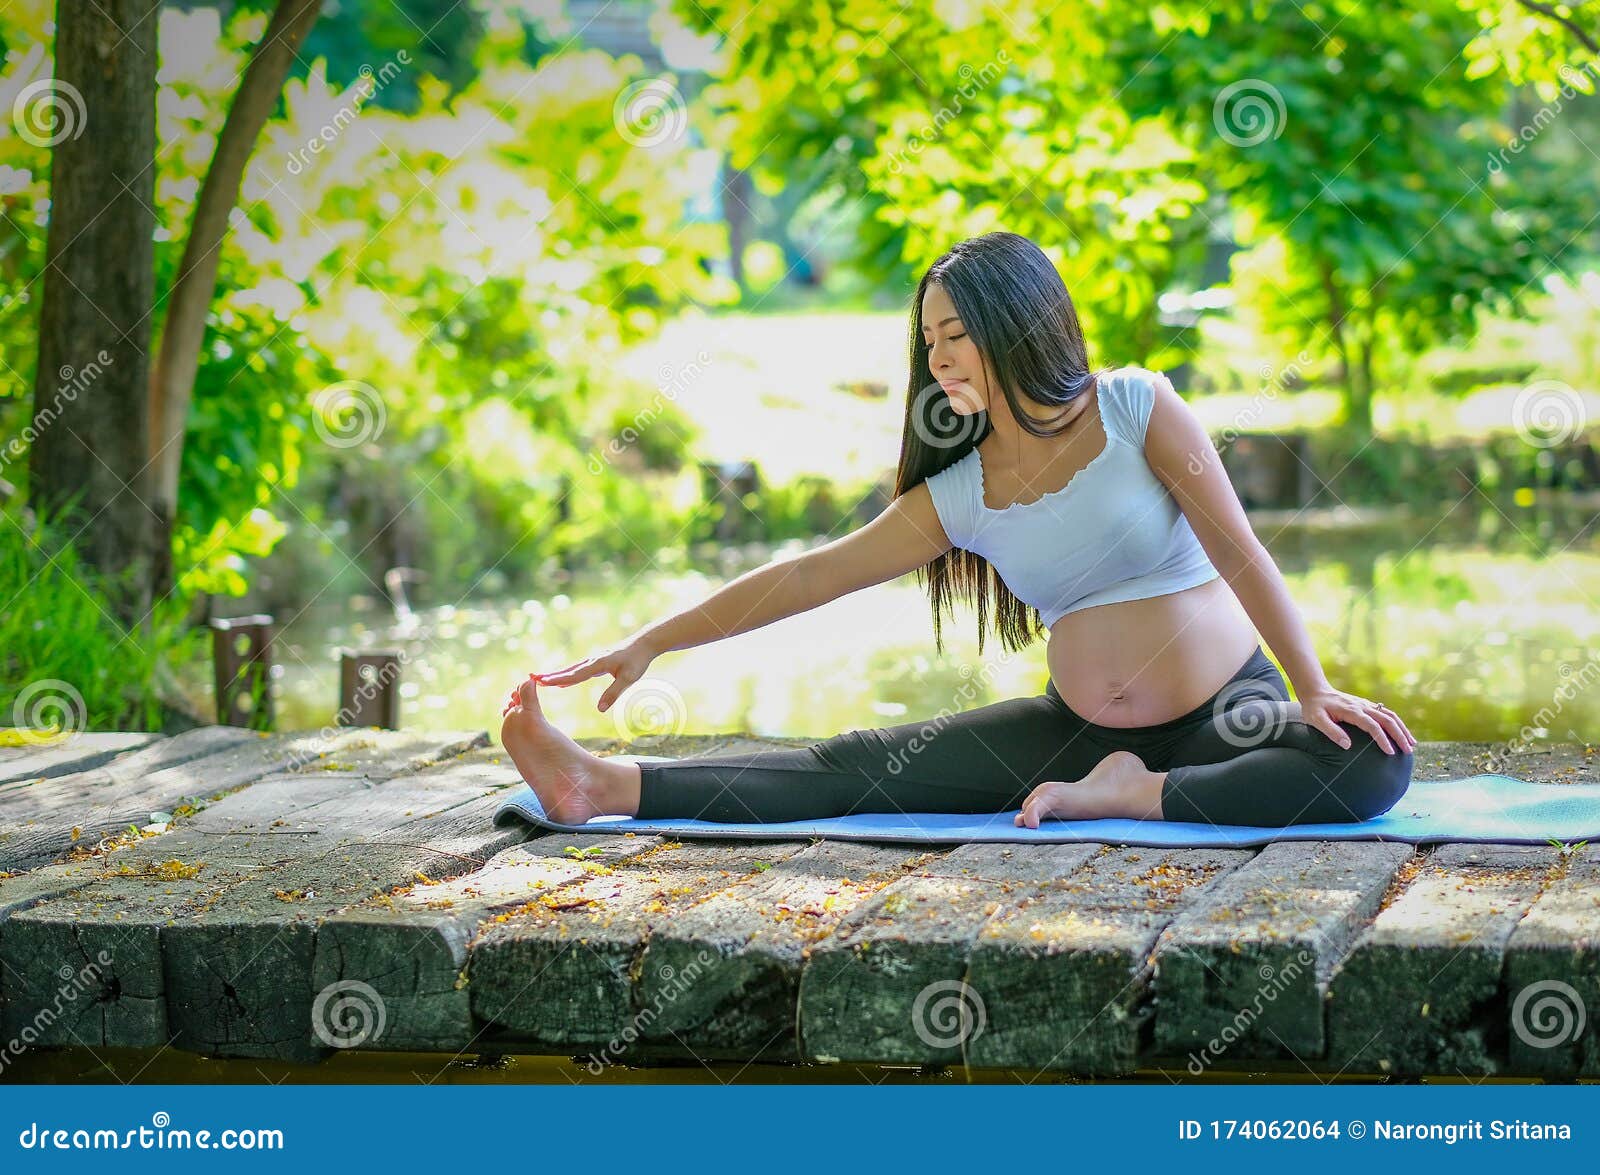 亚洲年轻孕妇坐在花园河边的木桥上练瑜伽的画像库存照片. 图片包括有